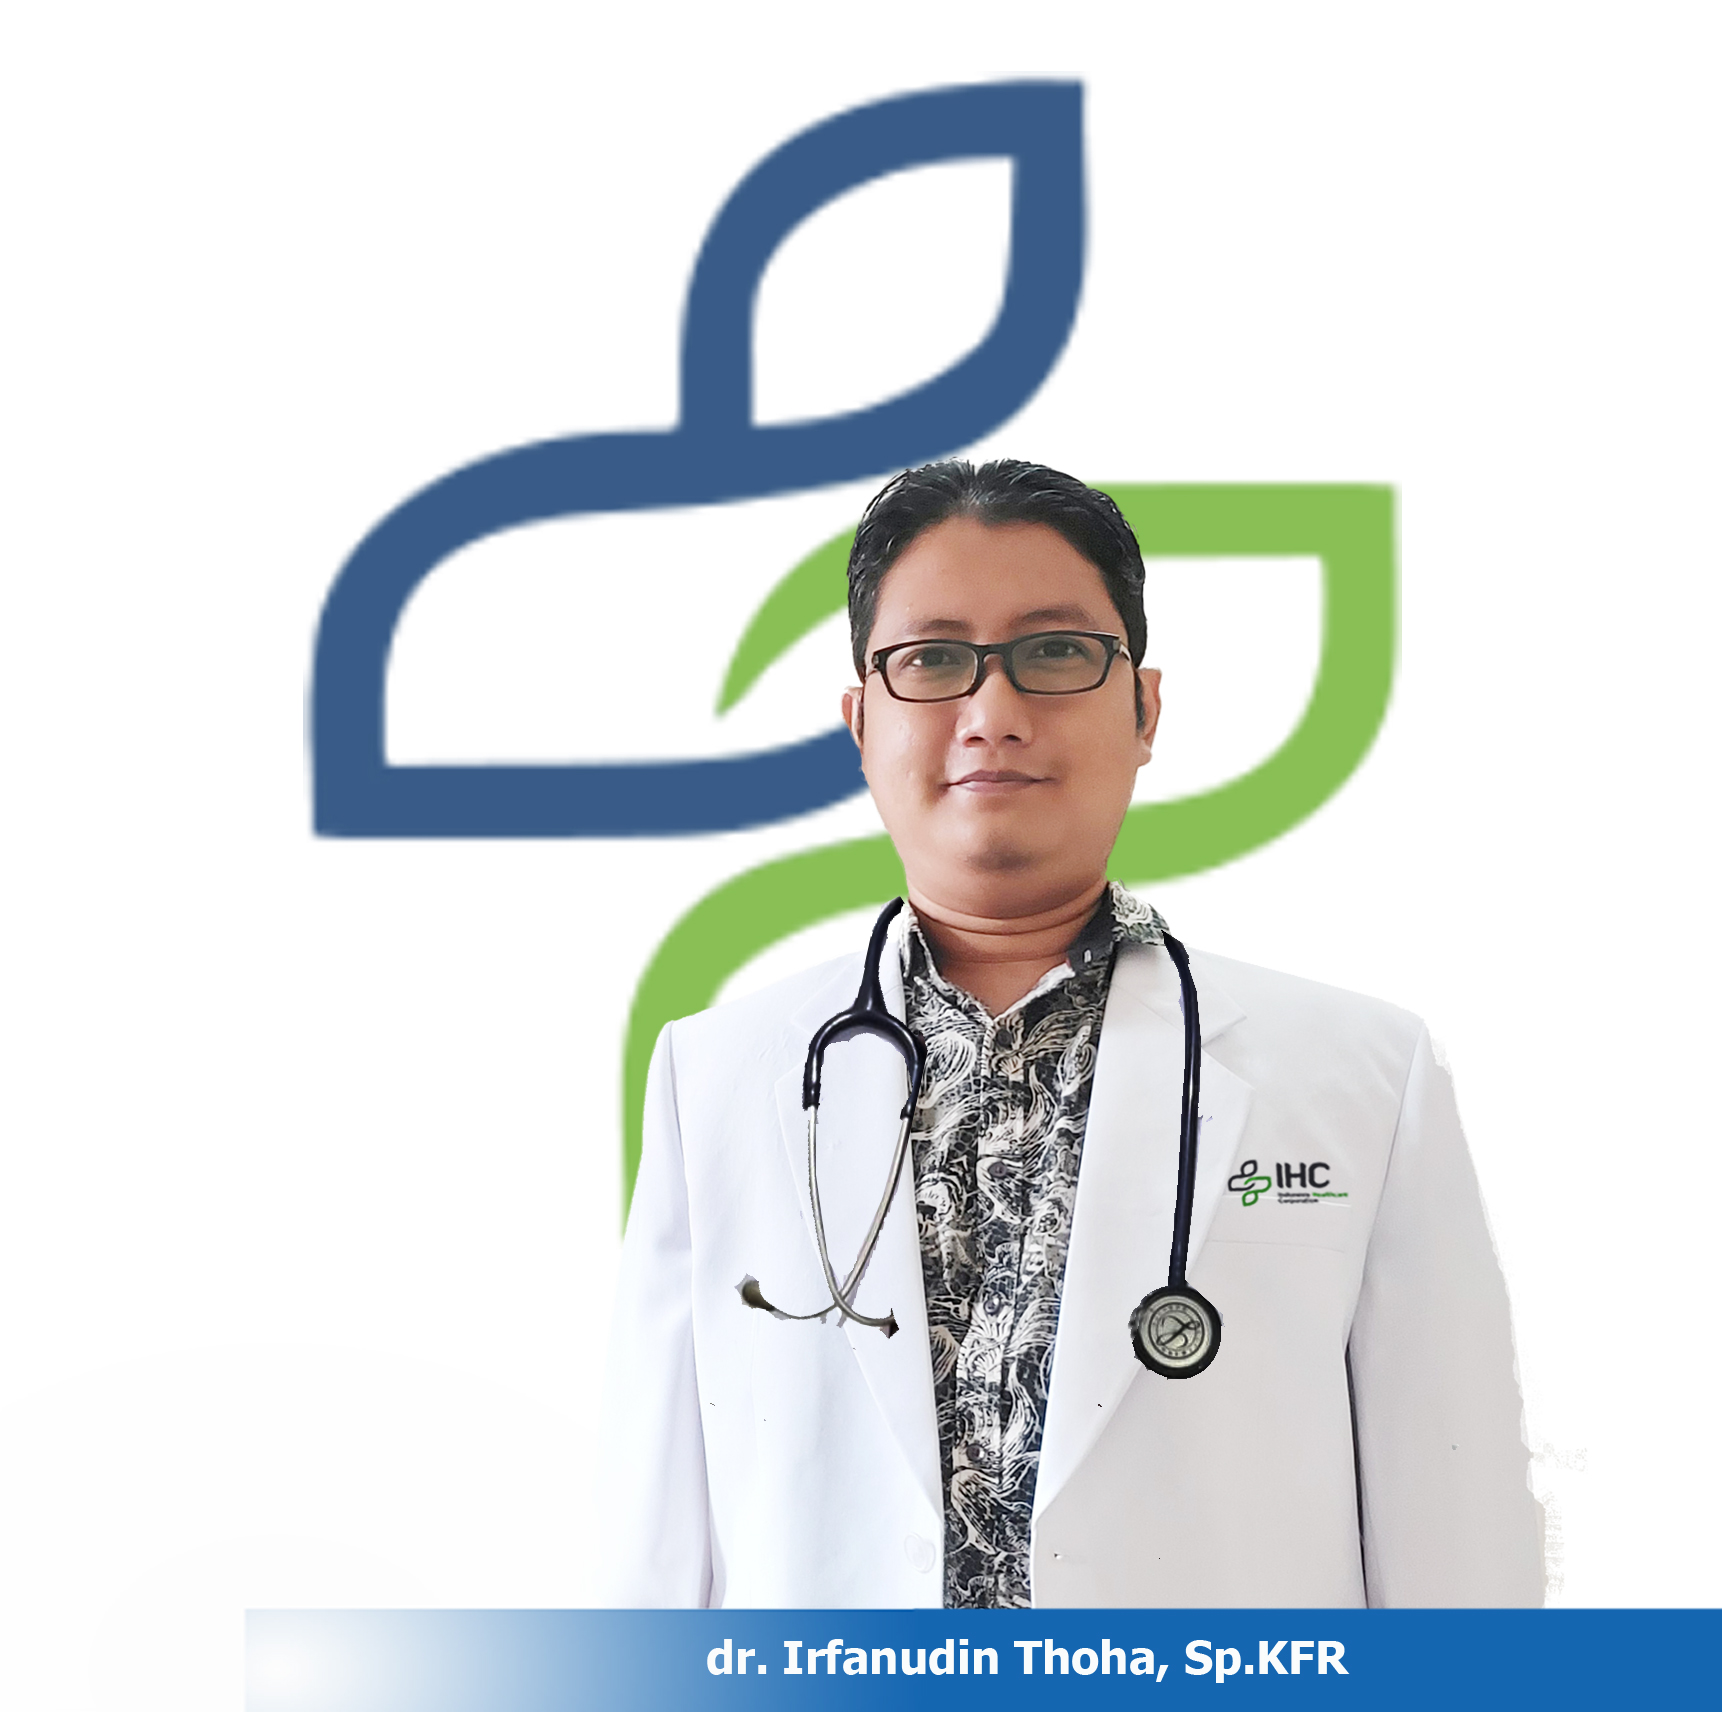 dr. Irfanudin Thoha, Sp.KFR